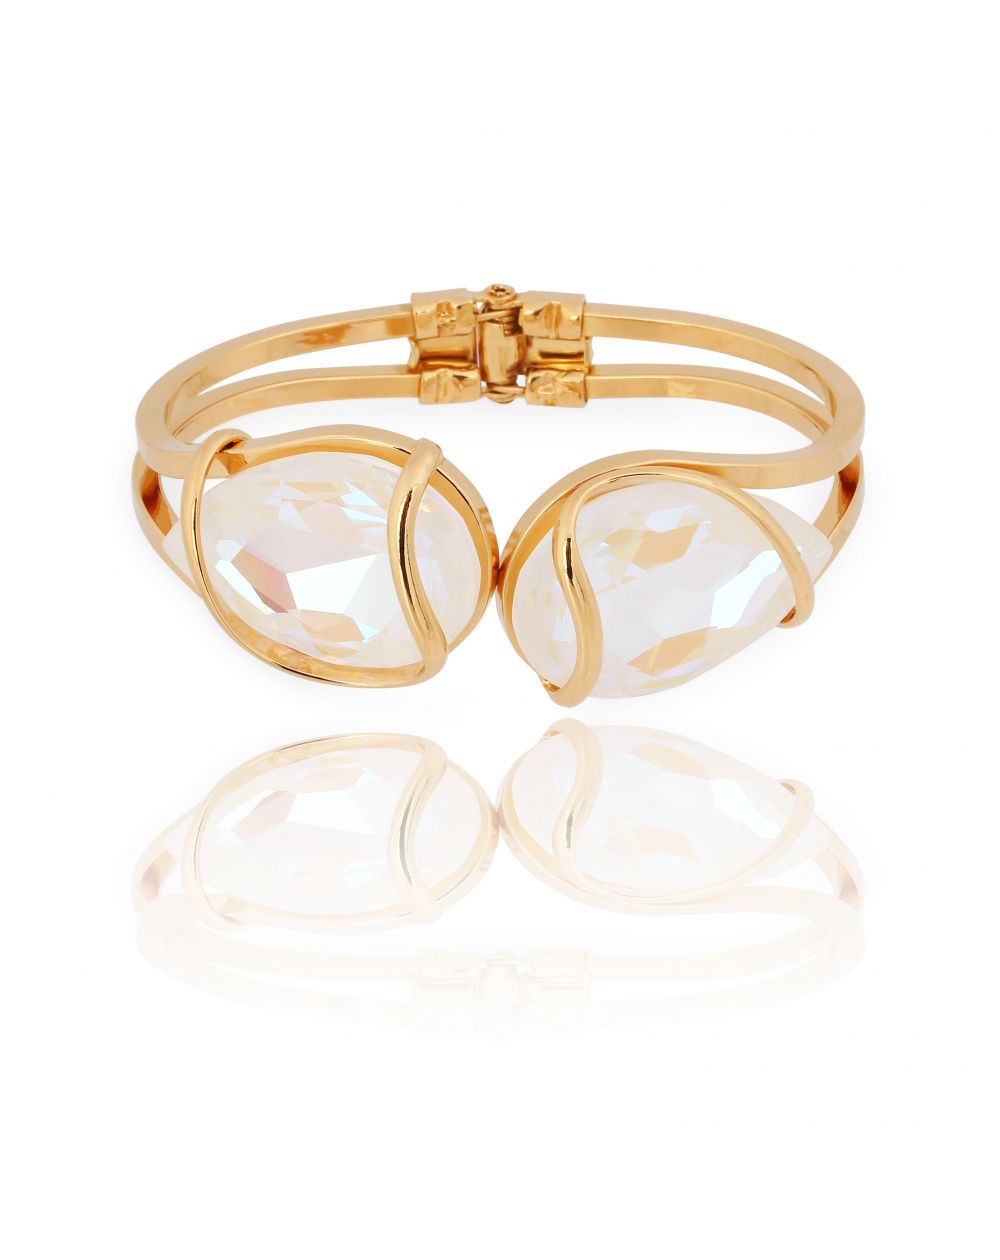 Andrea Marazzini bijoux - Bracelet cristal Swarovski white delite